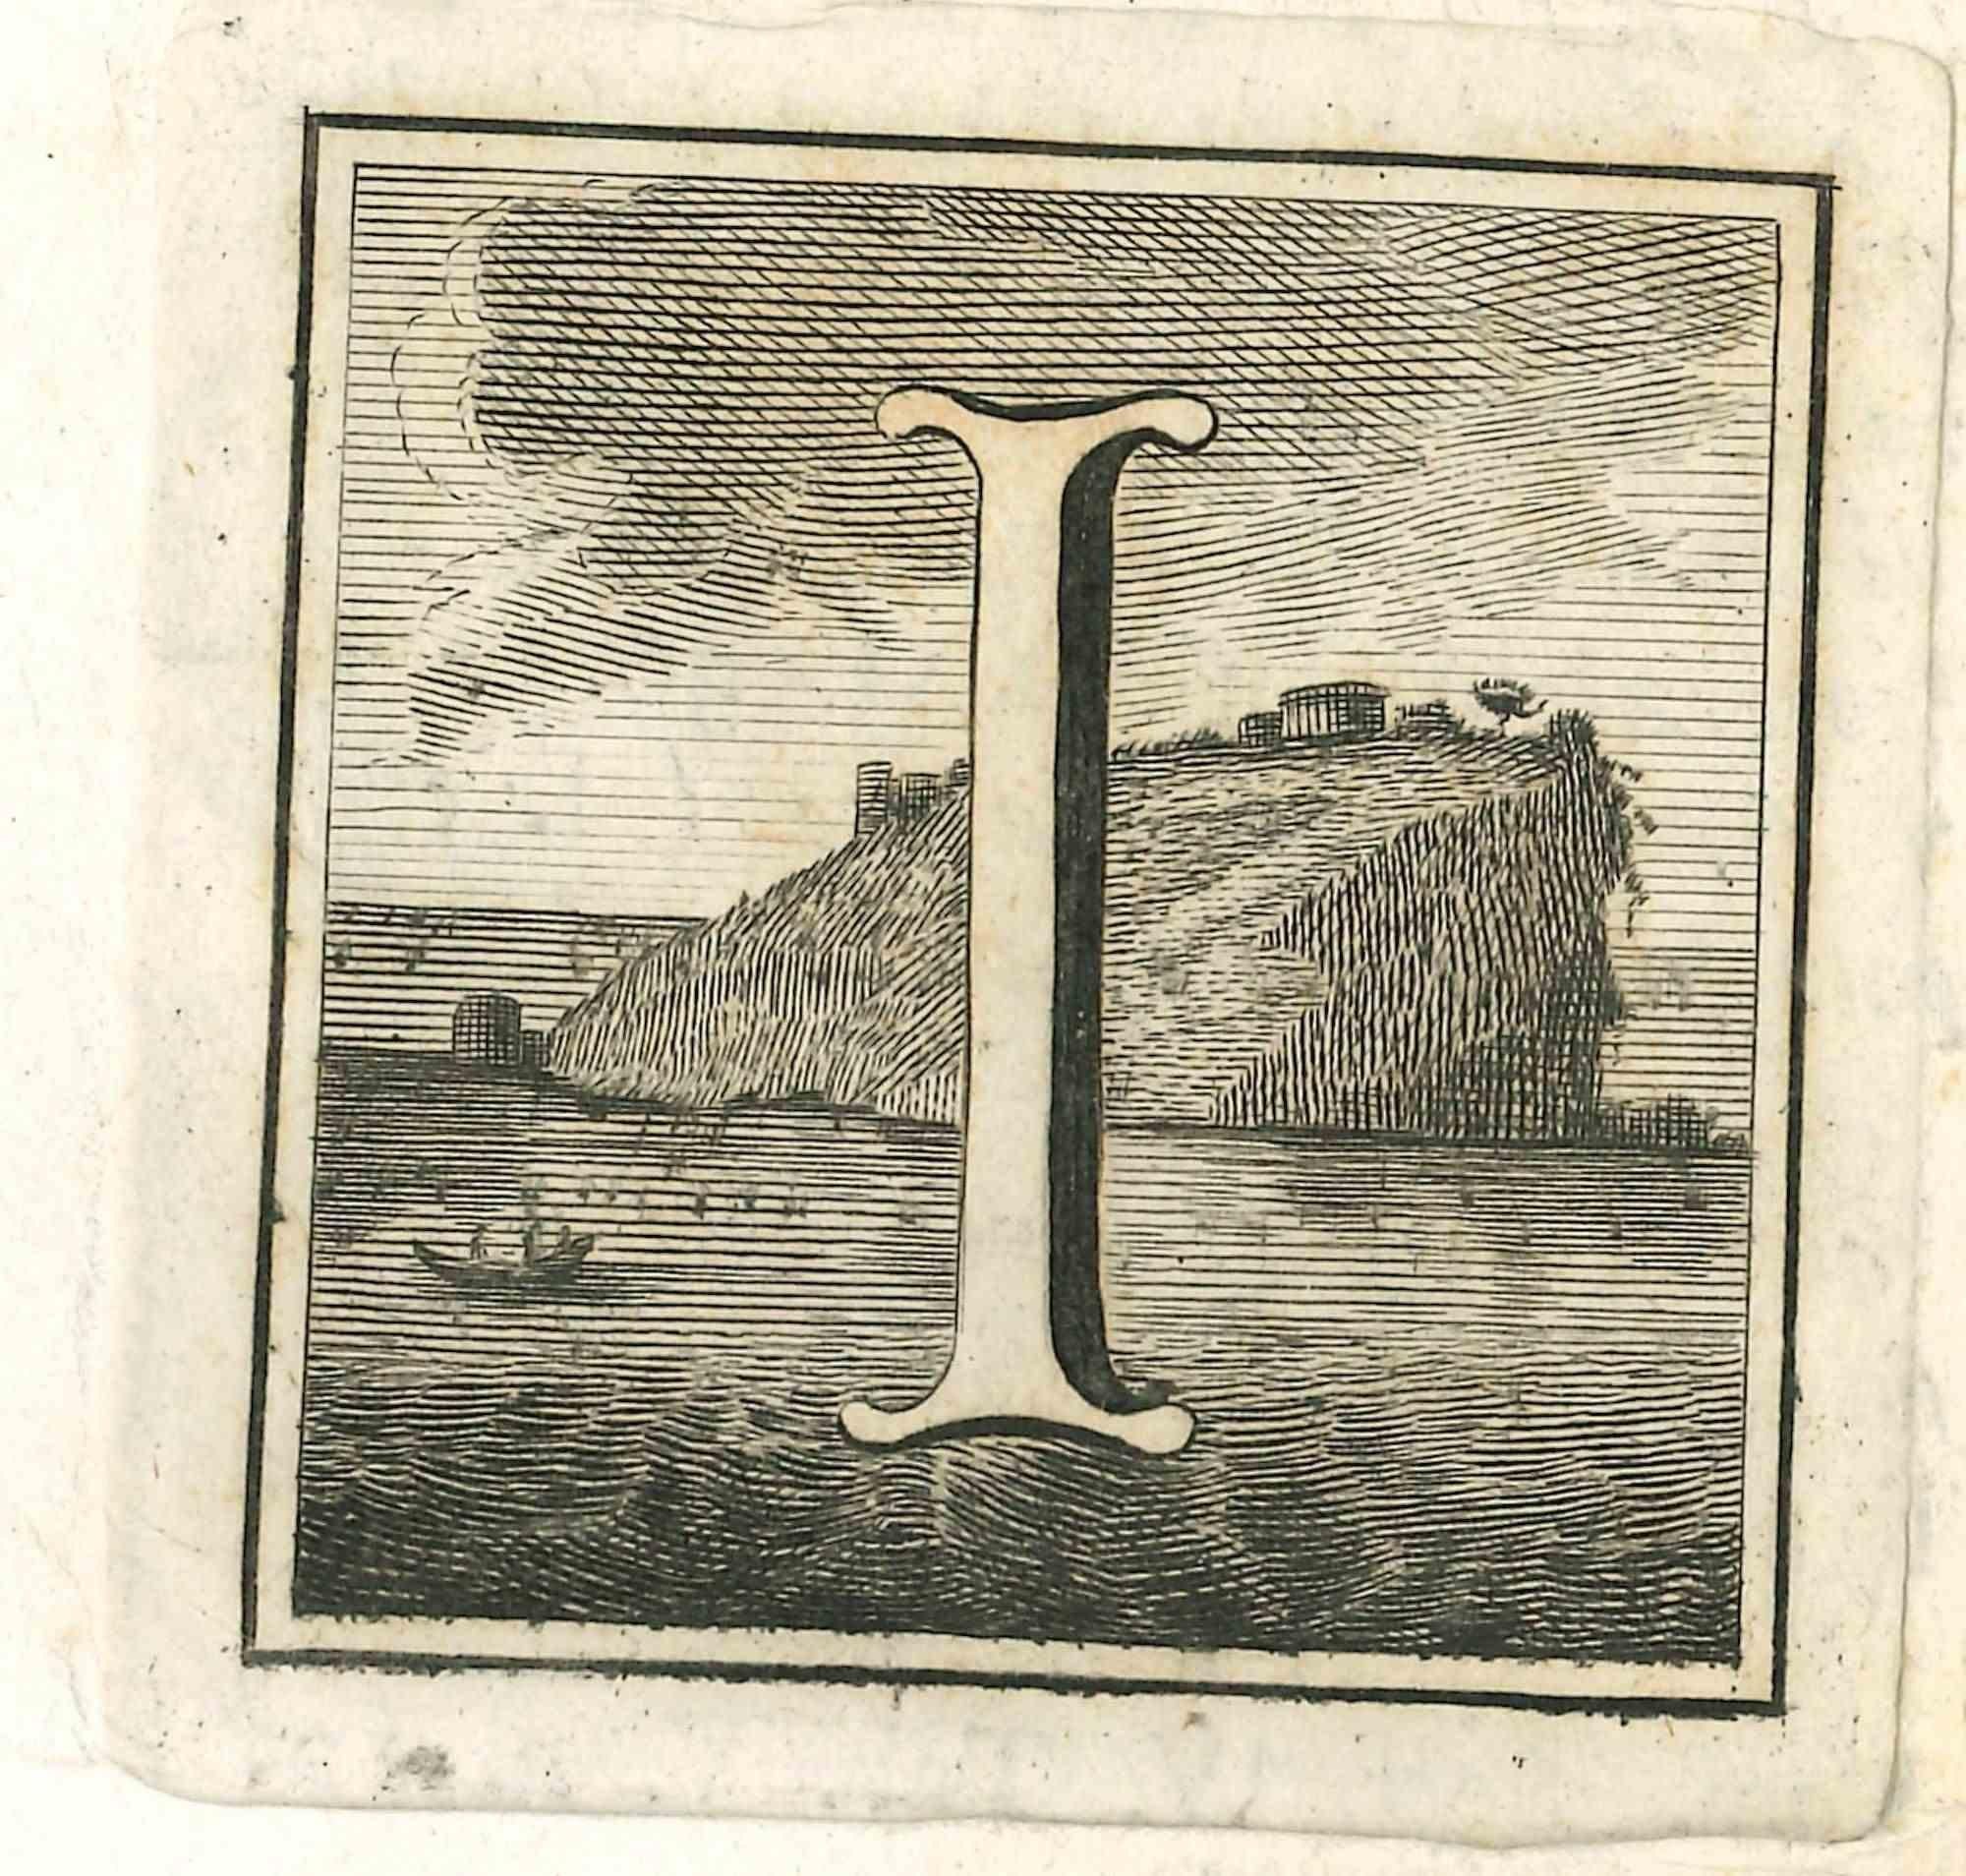 Lettre de l'alphabet I,  de la série "Antiquités d'Herculanum", est une gravure sur papier réalisée par Luigi Vanvitelli au 18ème siècle.

Bon état avec quelques pliures.

La gravure appartient à la suite d'estampes "Antiquités d'Herculanum